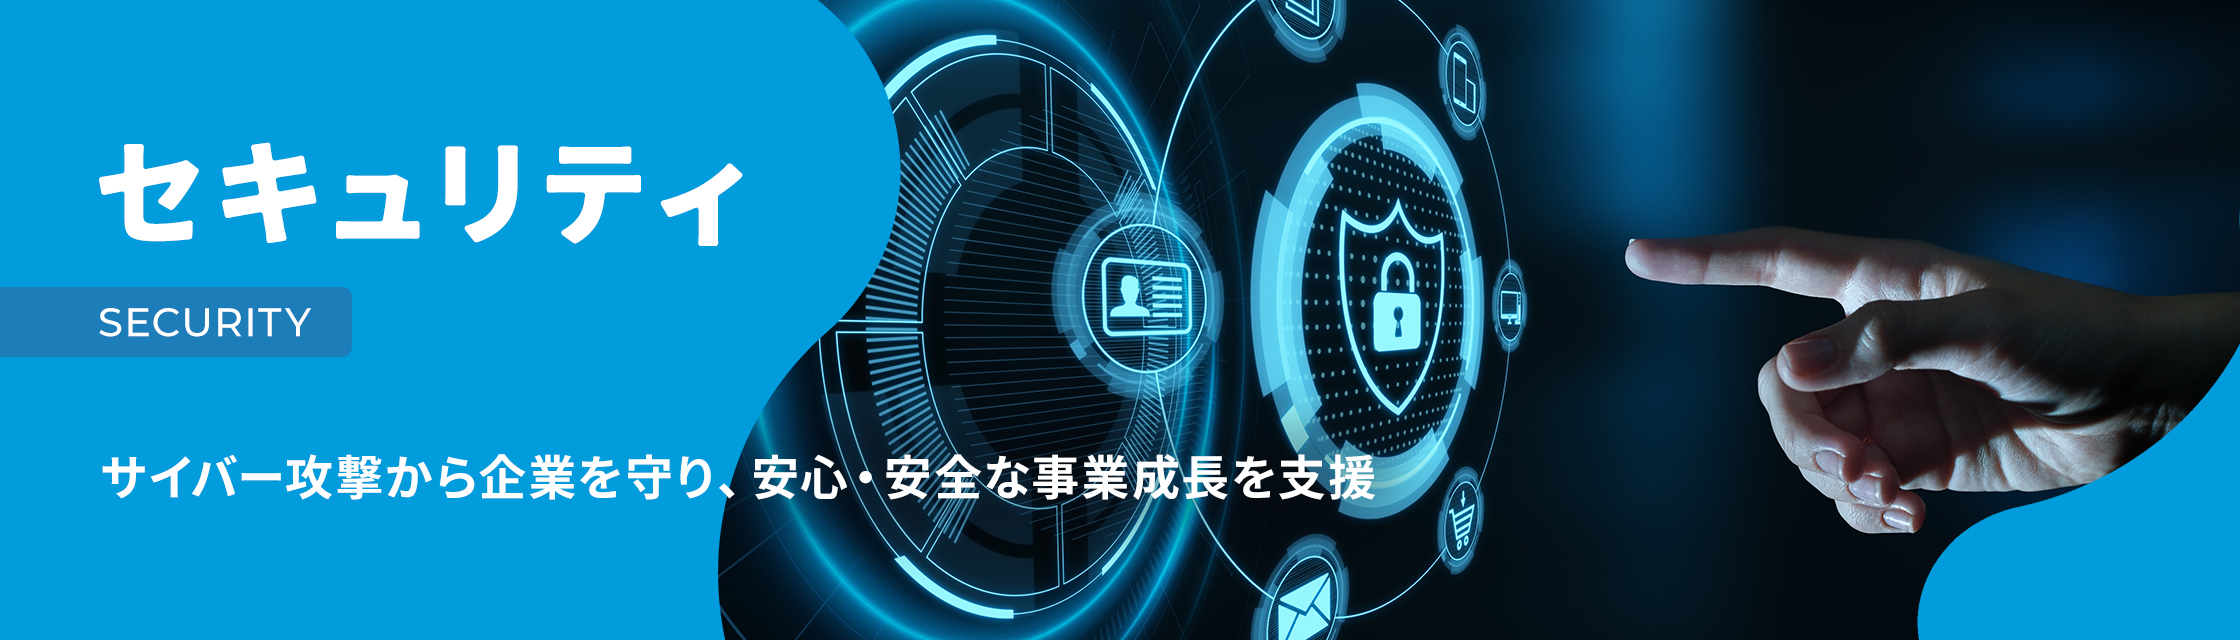 セキュリティ SECURITY サイバー攻撃から企業を守り、安心・安全な事業成長を支援